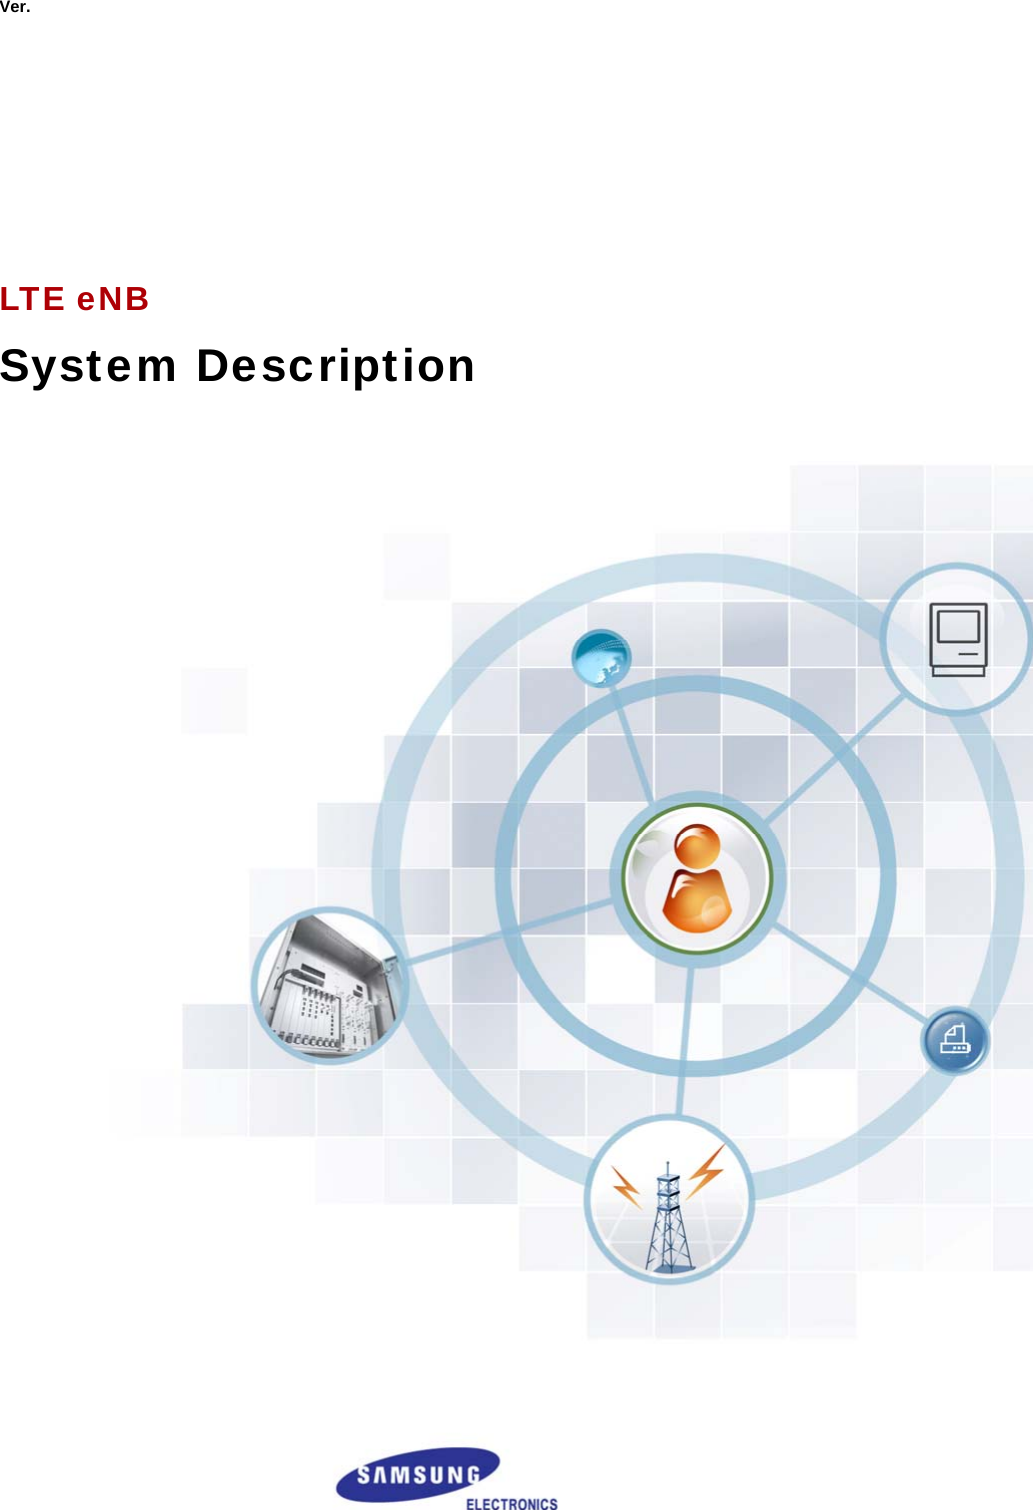  Ver.              LTE eNB System Description    